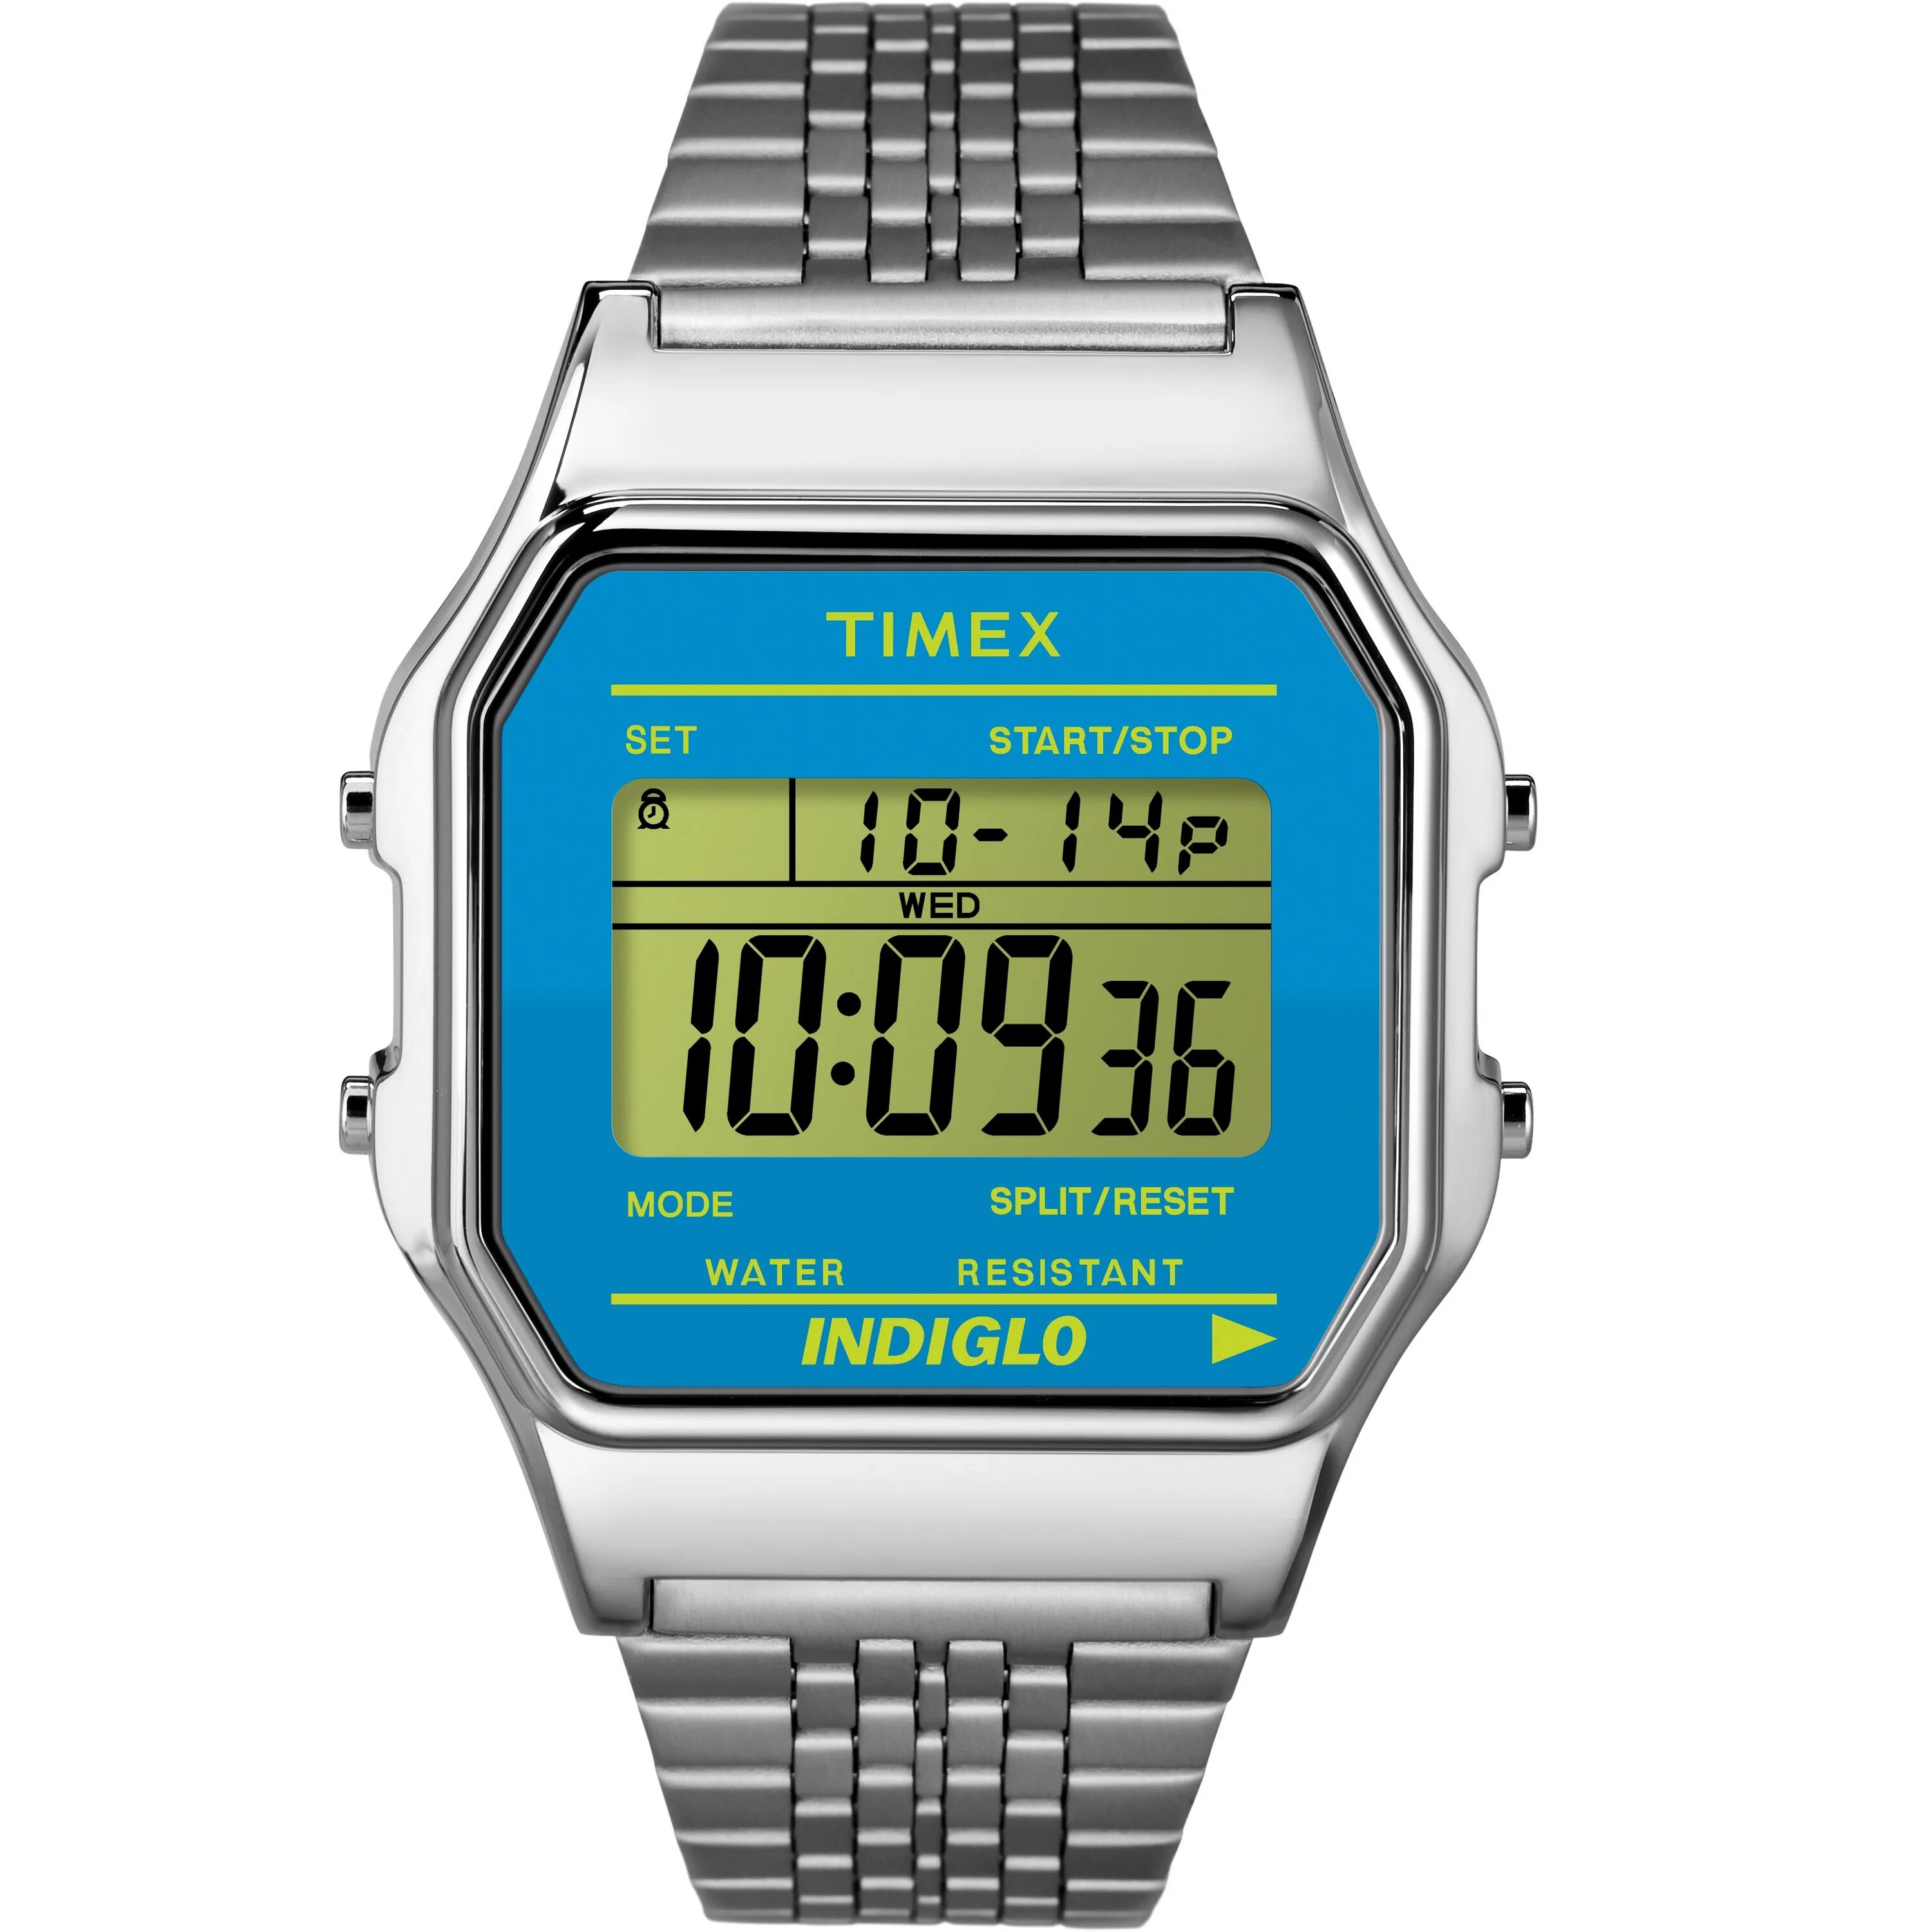 Часы Timex Indiglo. Classic Timex 80 watch. Timex Indiglo Classic. Timex Indiglo электронные часы. Часы т 80